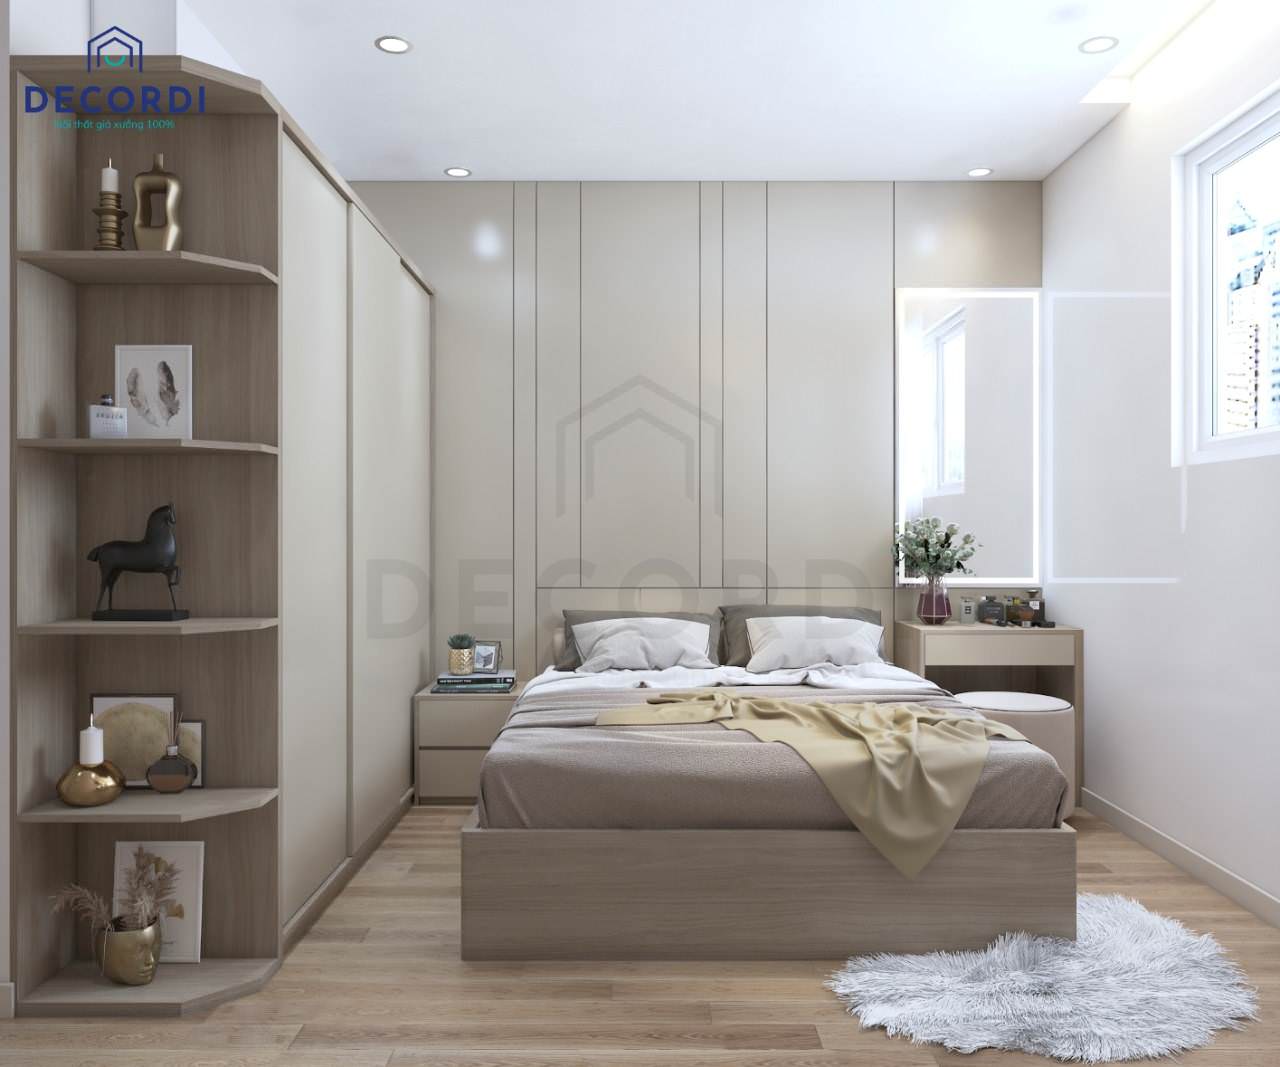 Thiết kế nội thất phòng ngủ màu trắng nâu hiện đại cho vợ chồng trẻ